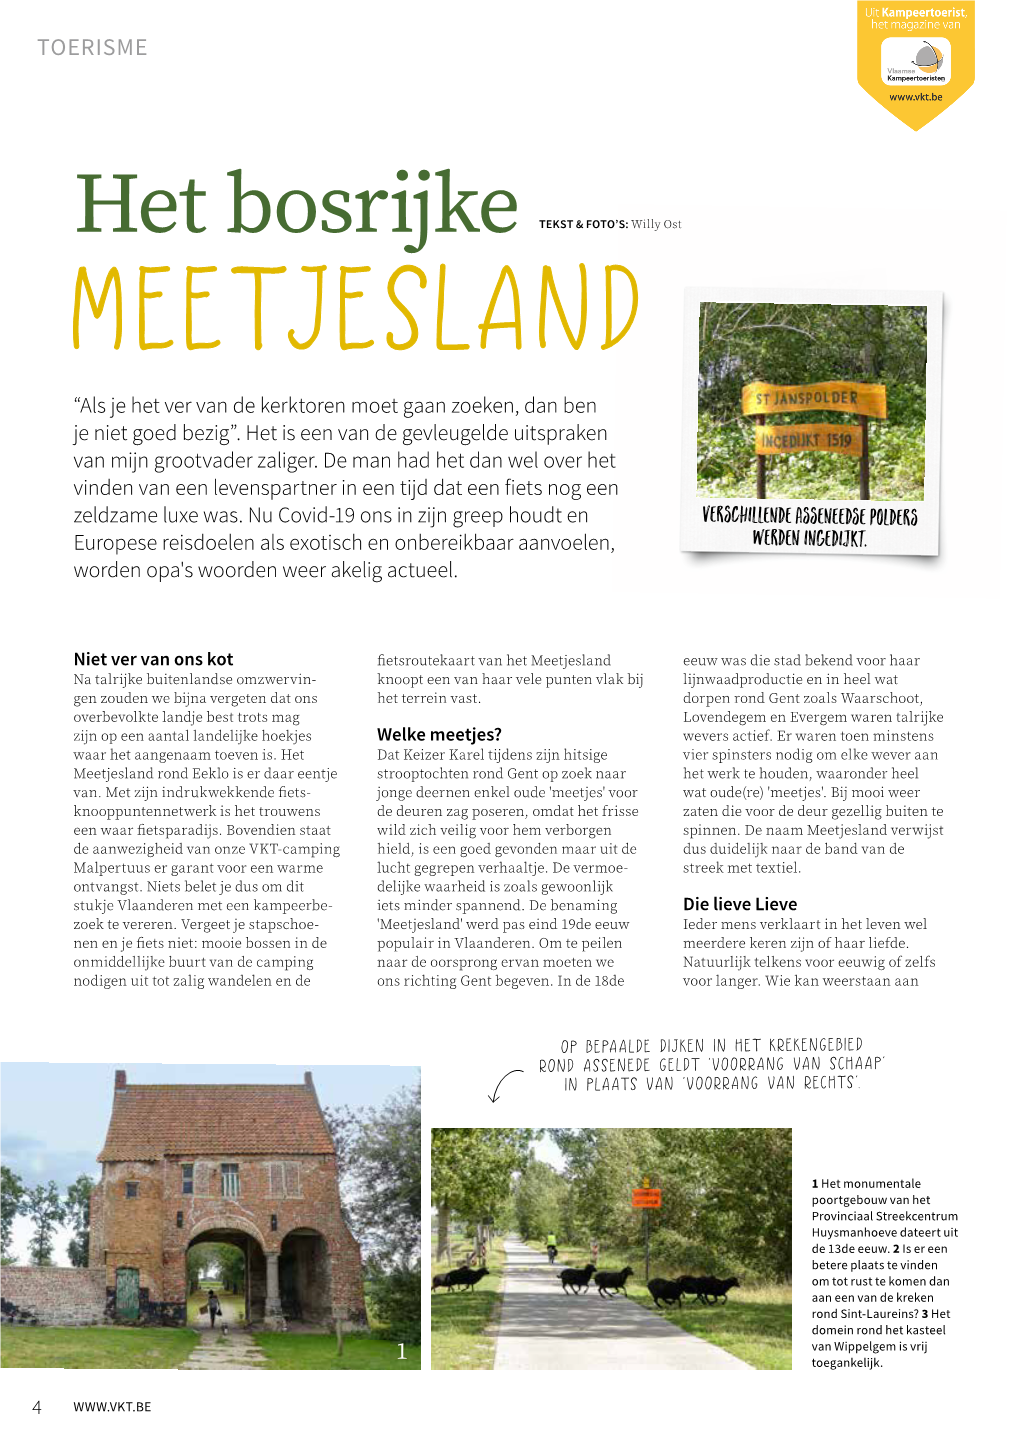 Open in Newkampeertoerist Magazine